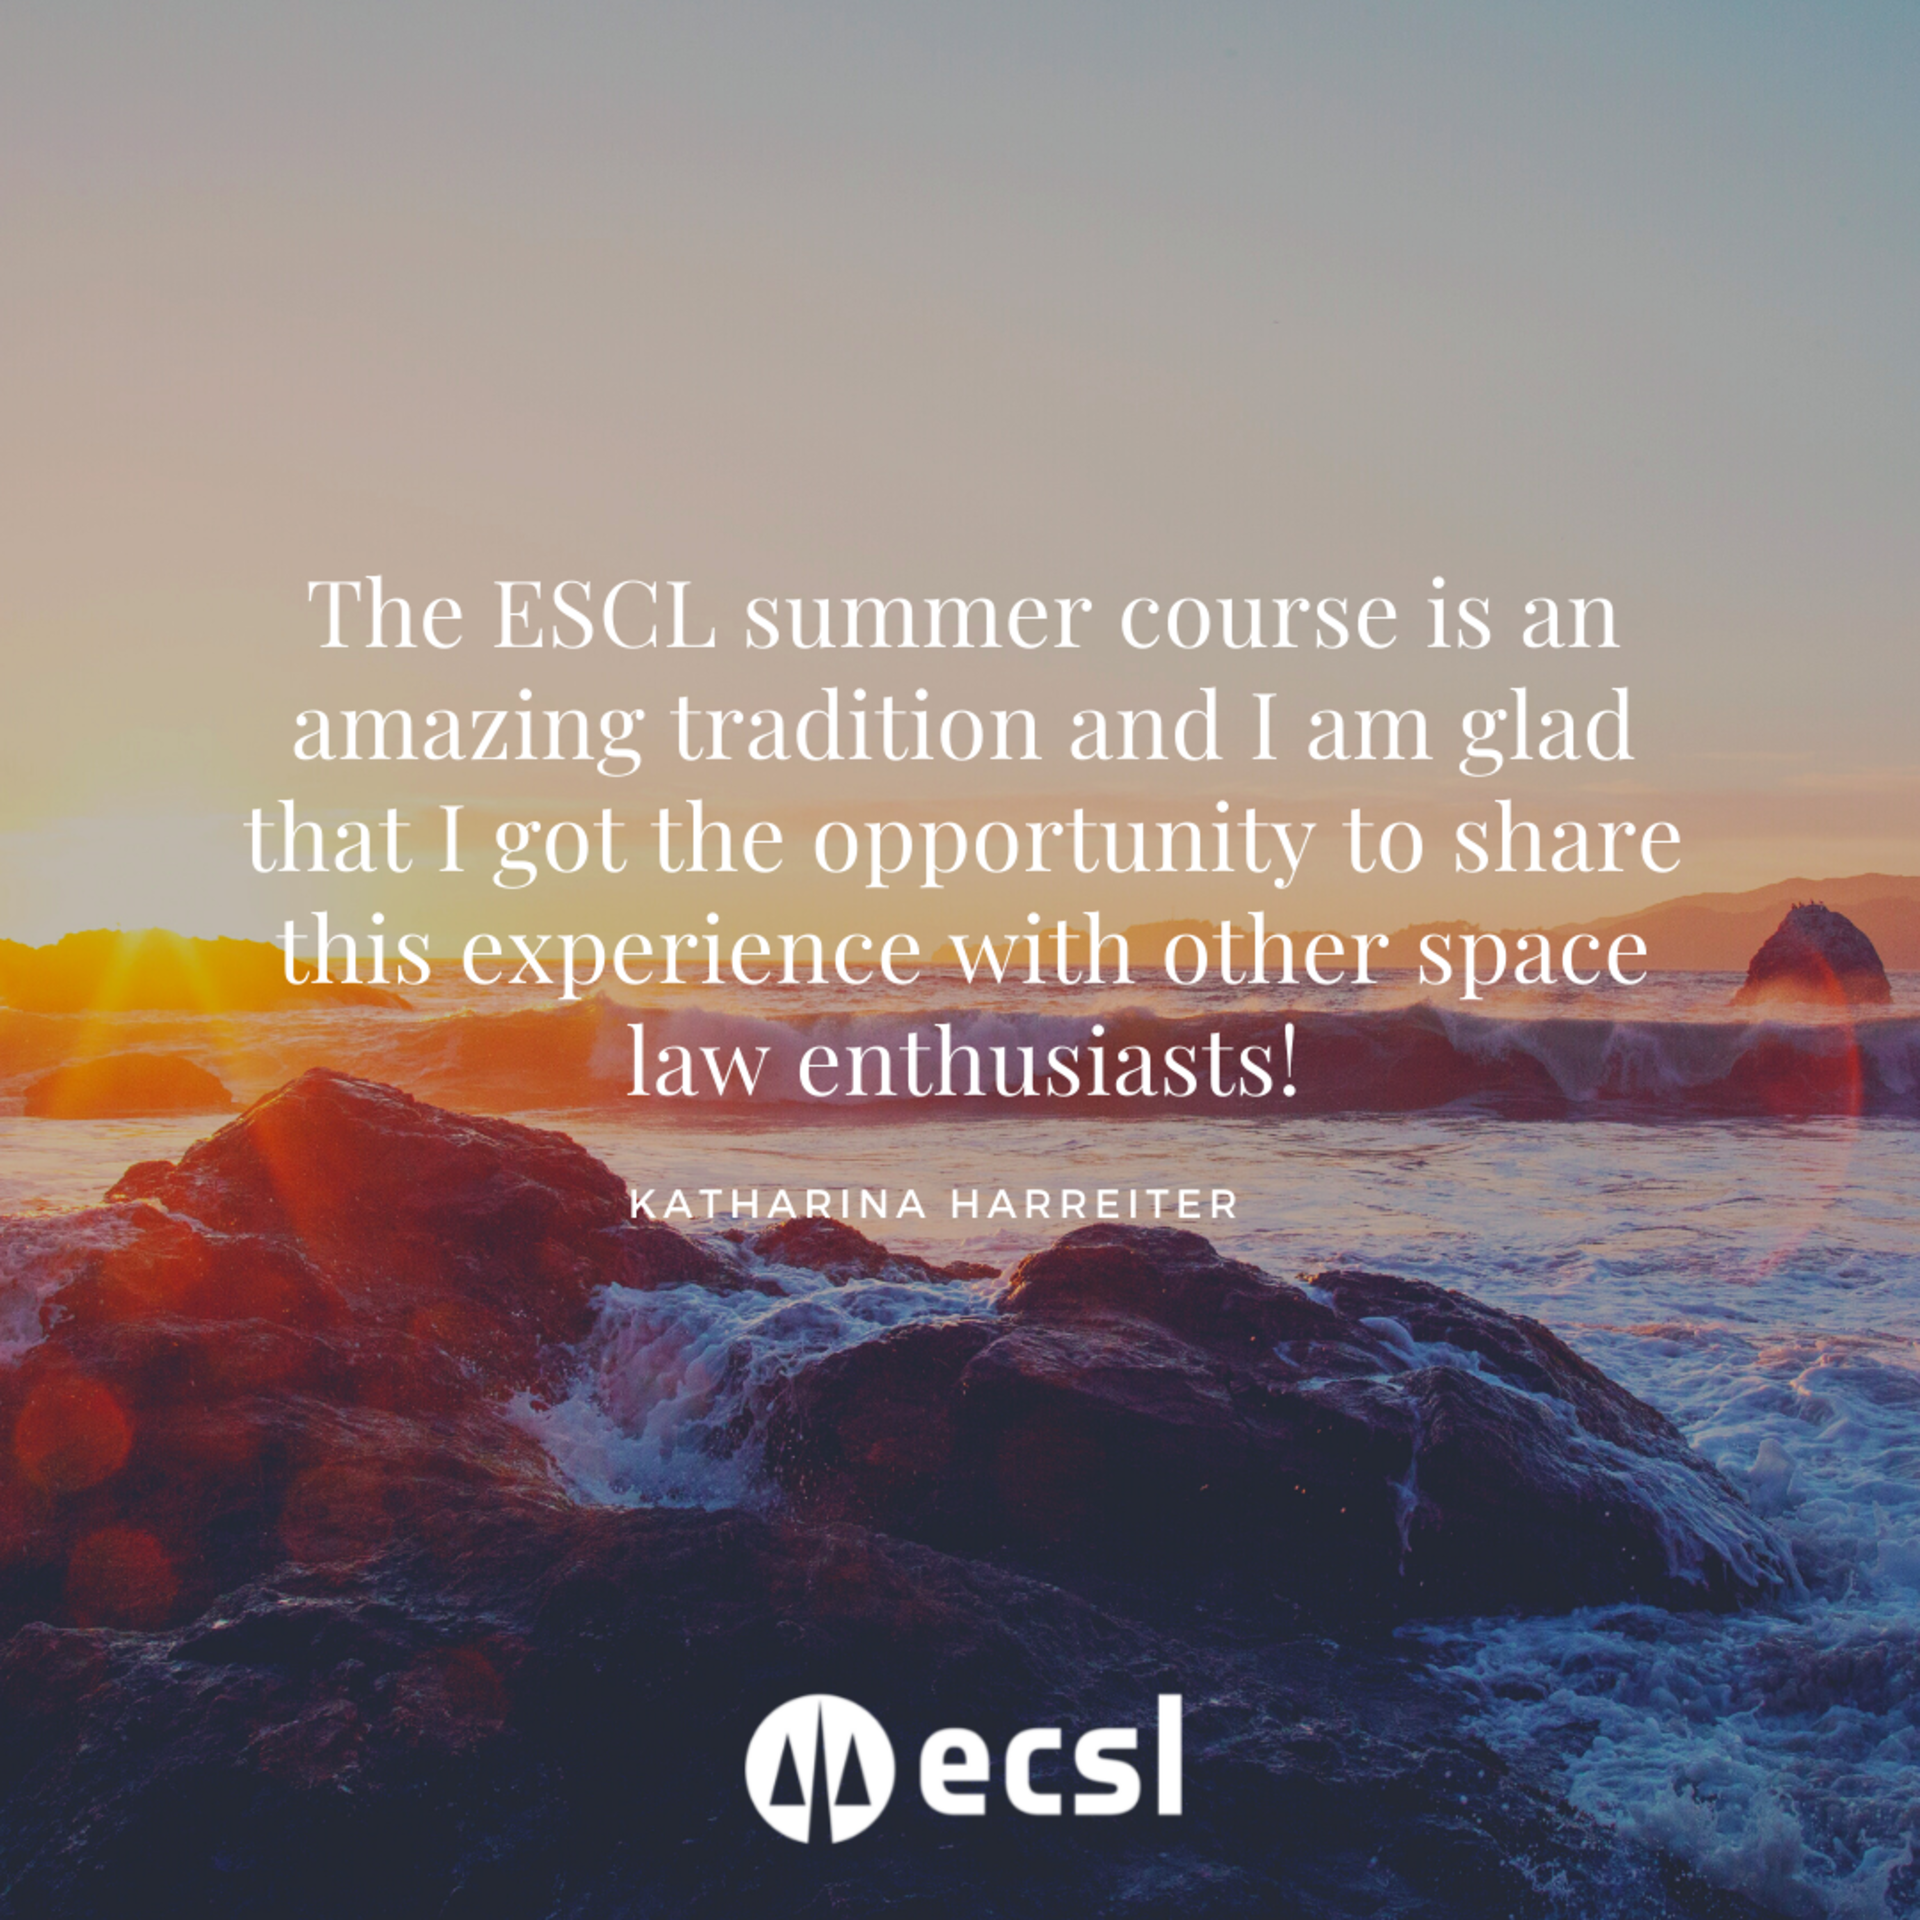 ECSL Summer Course Statement - Katharina Harreiter